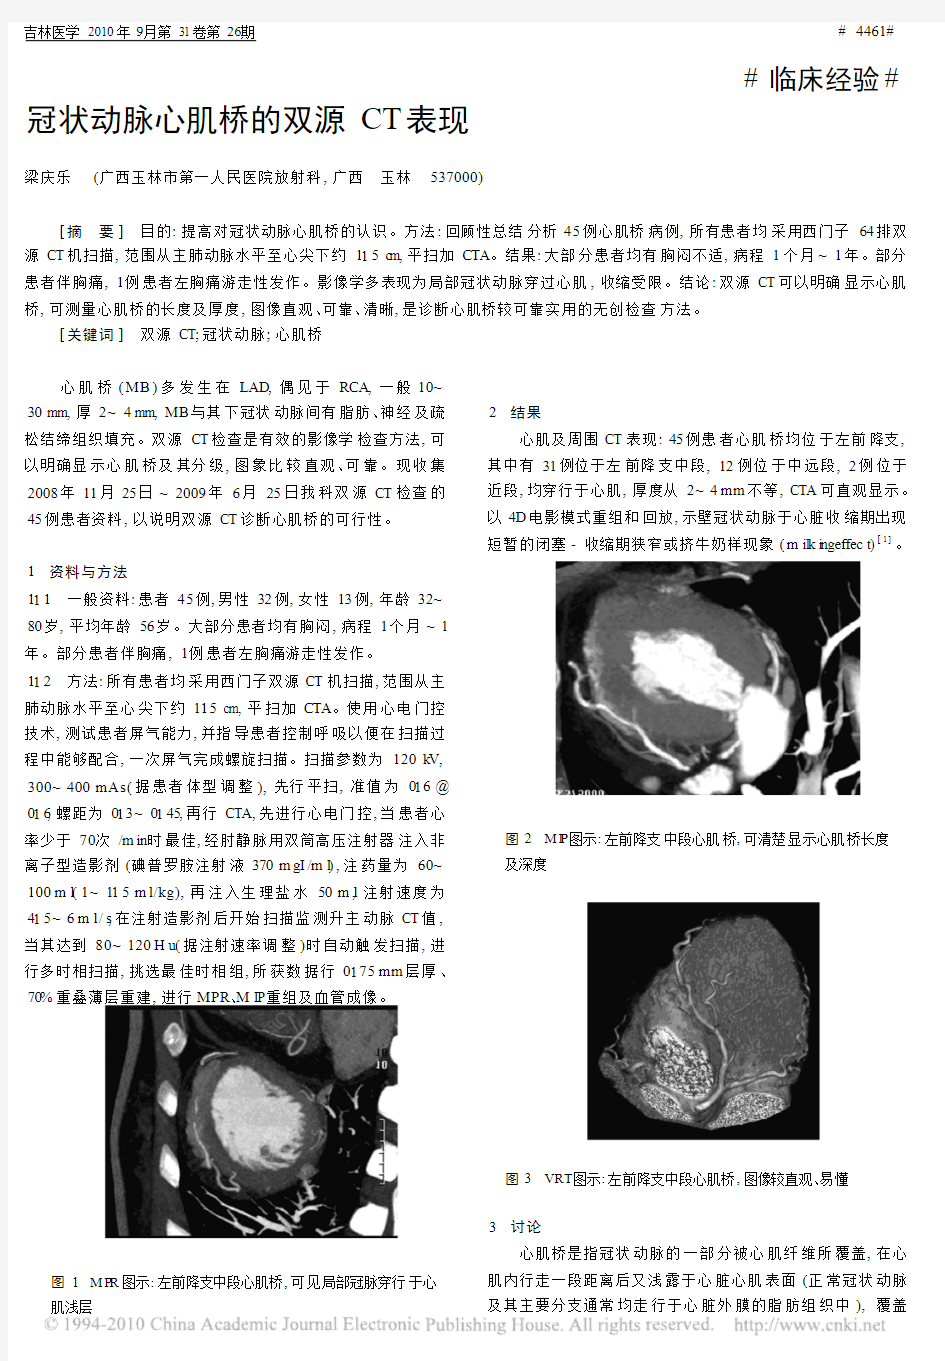 冠状动脉心肌桥的双源CT表现